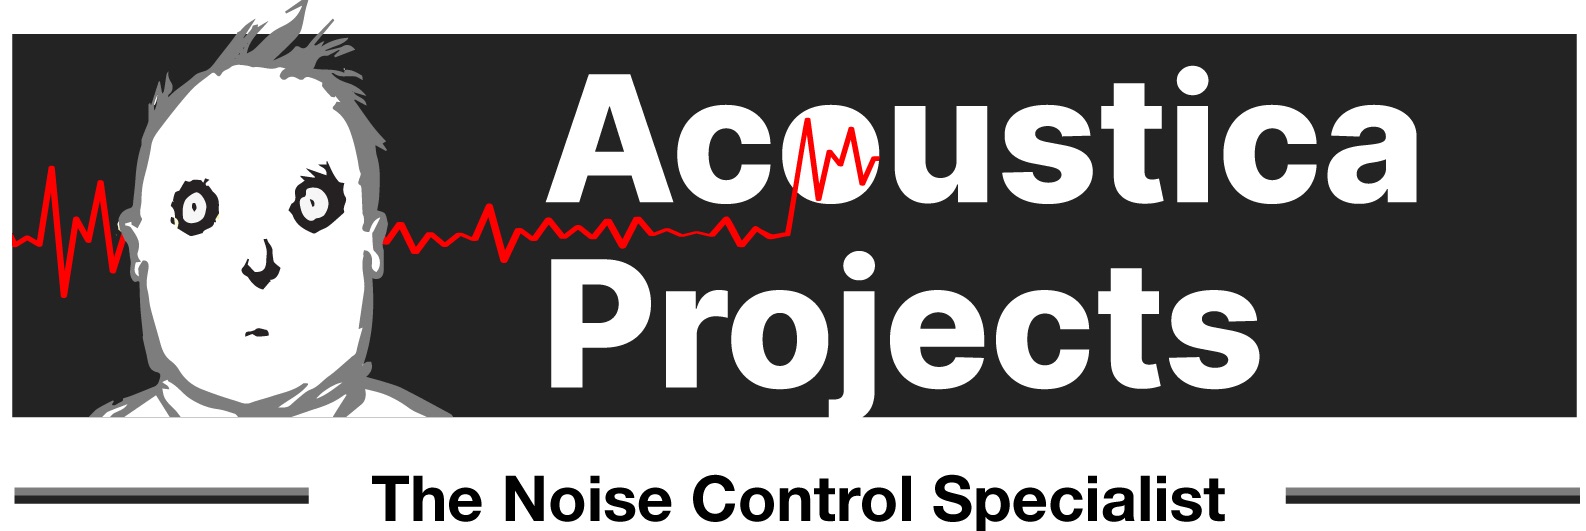 Acoustica Projects Management Pty Ltd